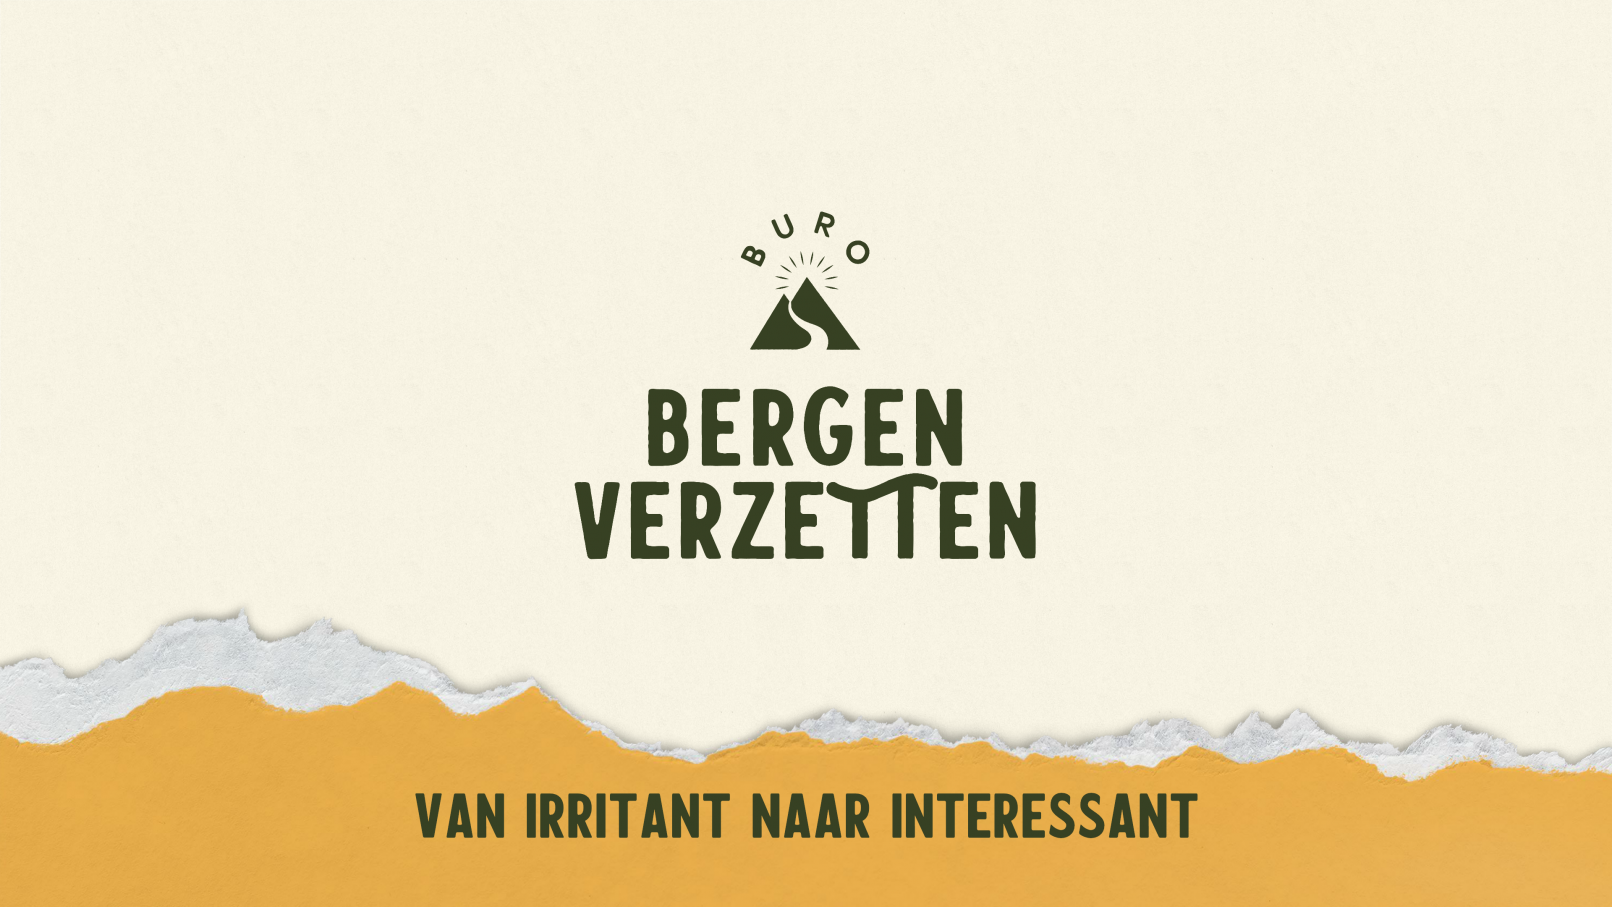 Buro Bergen Verzetten - duurzame en complexe veranderingen verbeelden - Ilse van den Bergh en Janna Kool